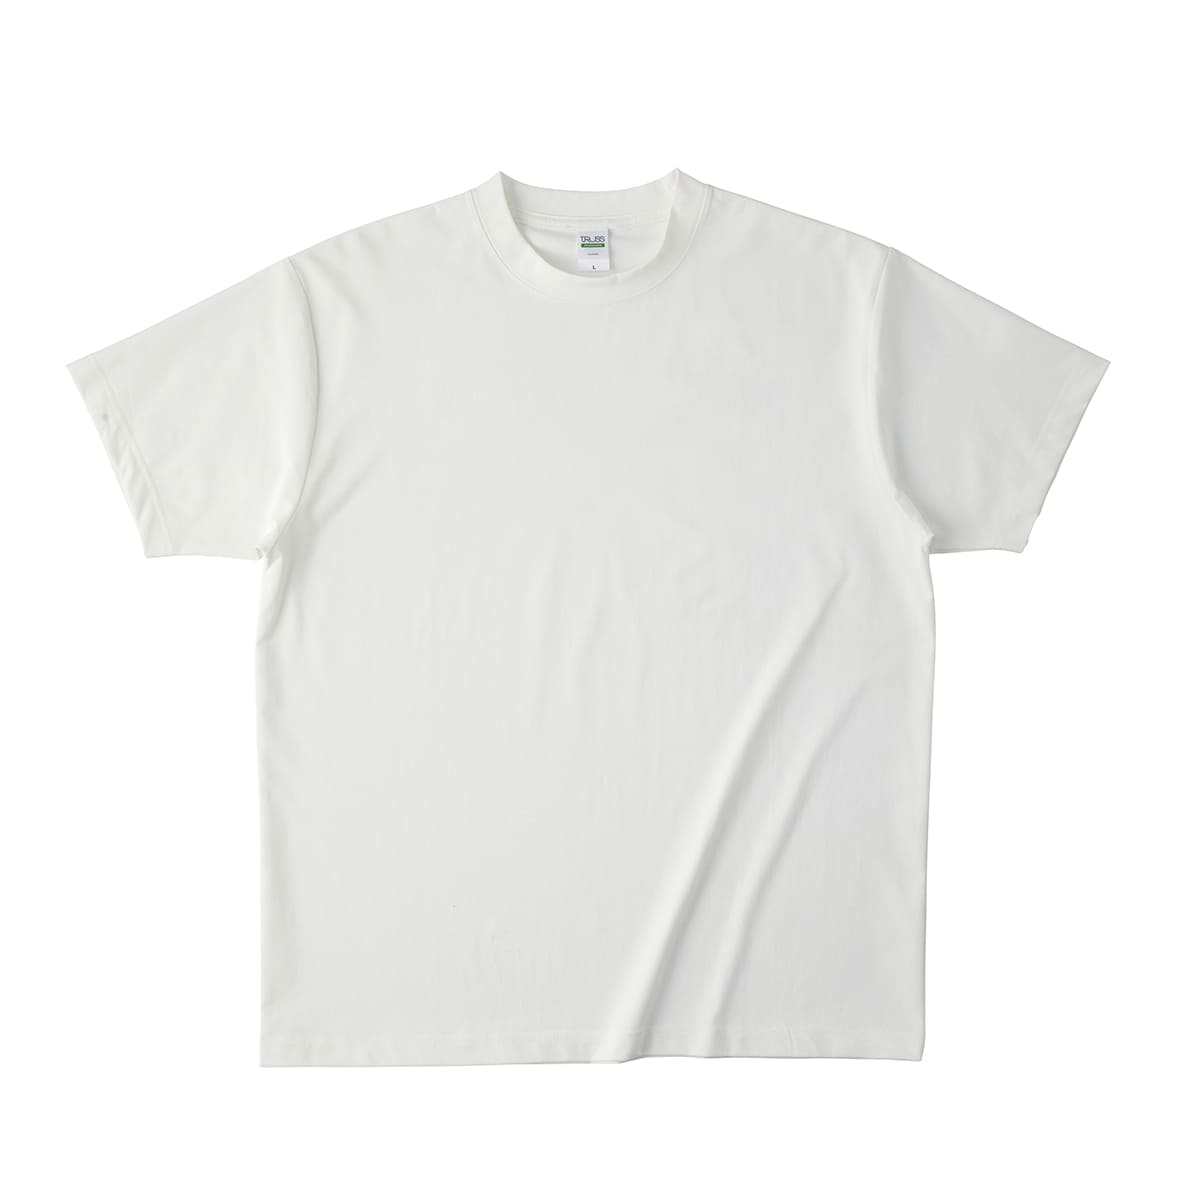 Tシャツ メンズ 無地 TRUSS トラス リサイクルポリエステルTシャツ RPT-925 男女兼用...